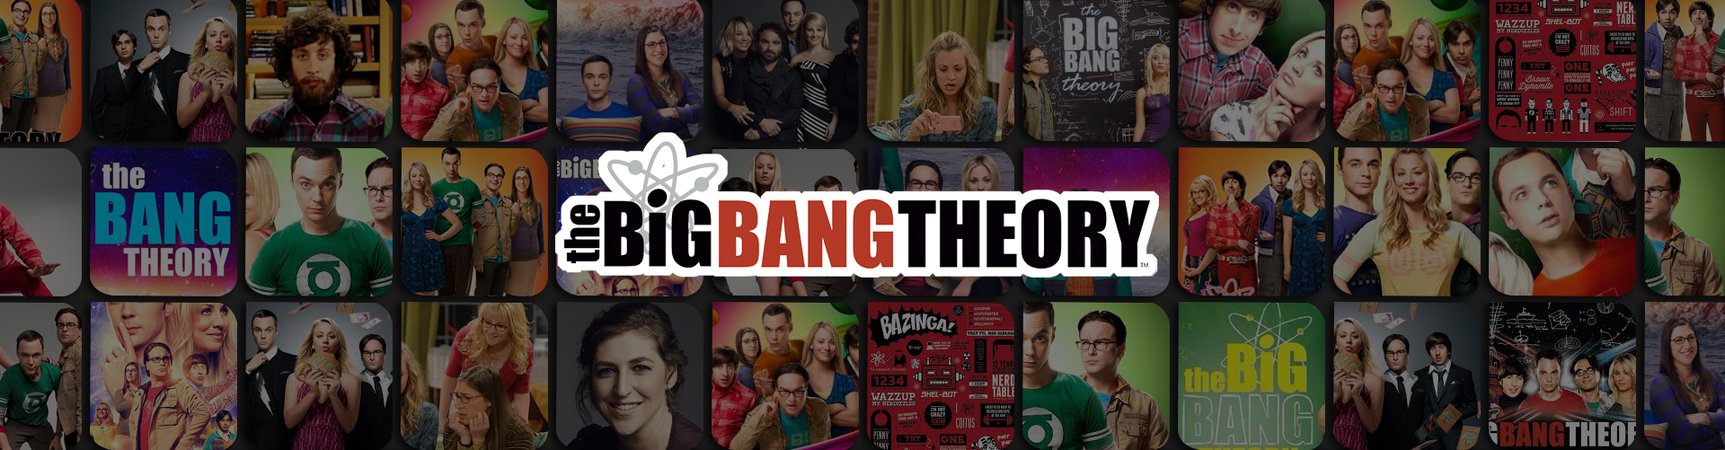 The Big Bang Theory Bookmarks